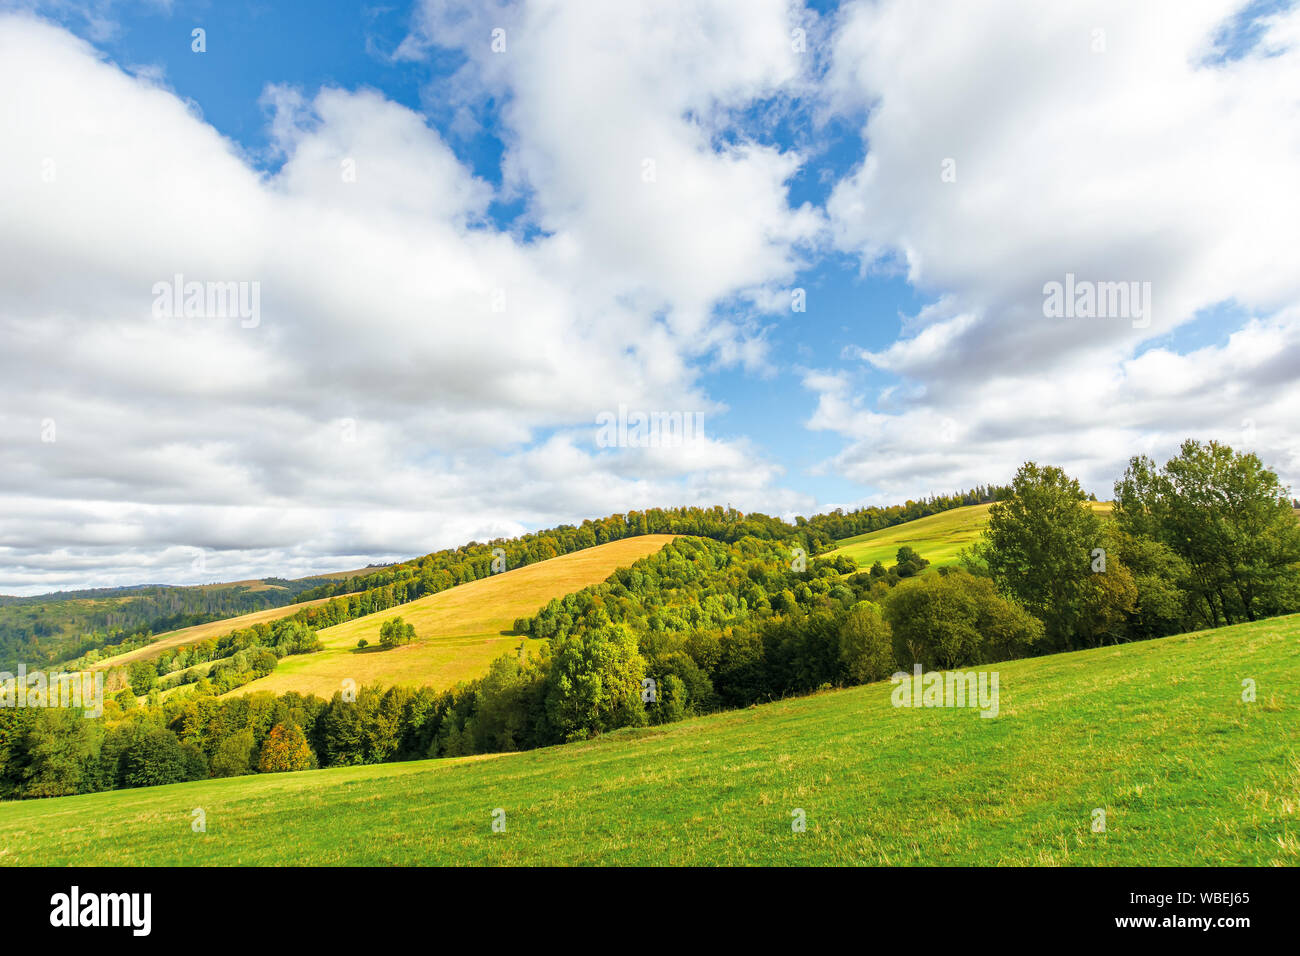 Die schöne Landschaft in Berg. Bäume auf grasbewachsenen Hügeln. sonnigen September wetter mit bewölktem Himmel. Wunderbare Natur Hintergrund Stockfoto